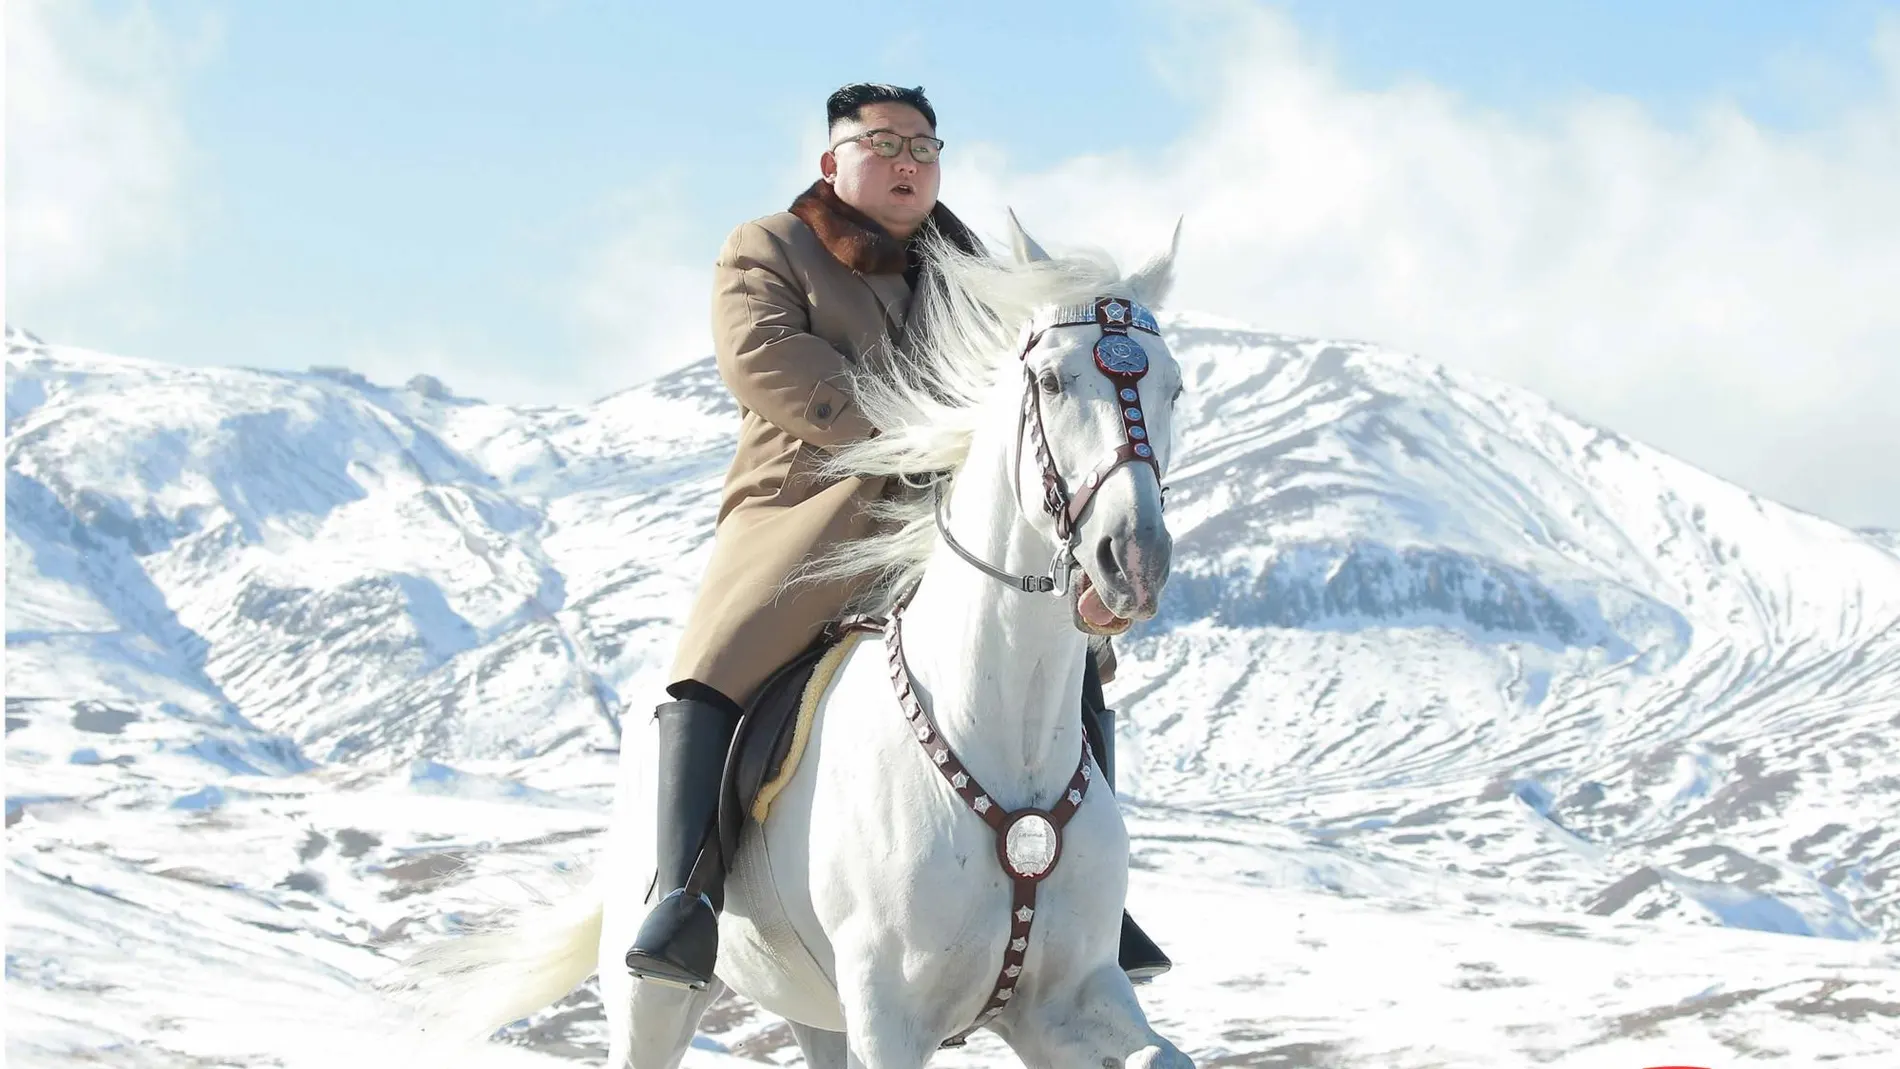 El régimen ha difundido ocho imágenes ecuestres de Kim Jong Un/Efe